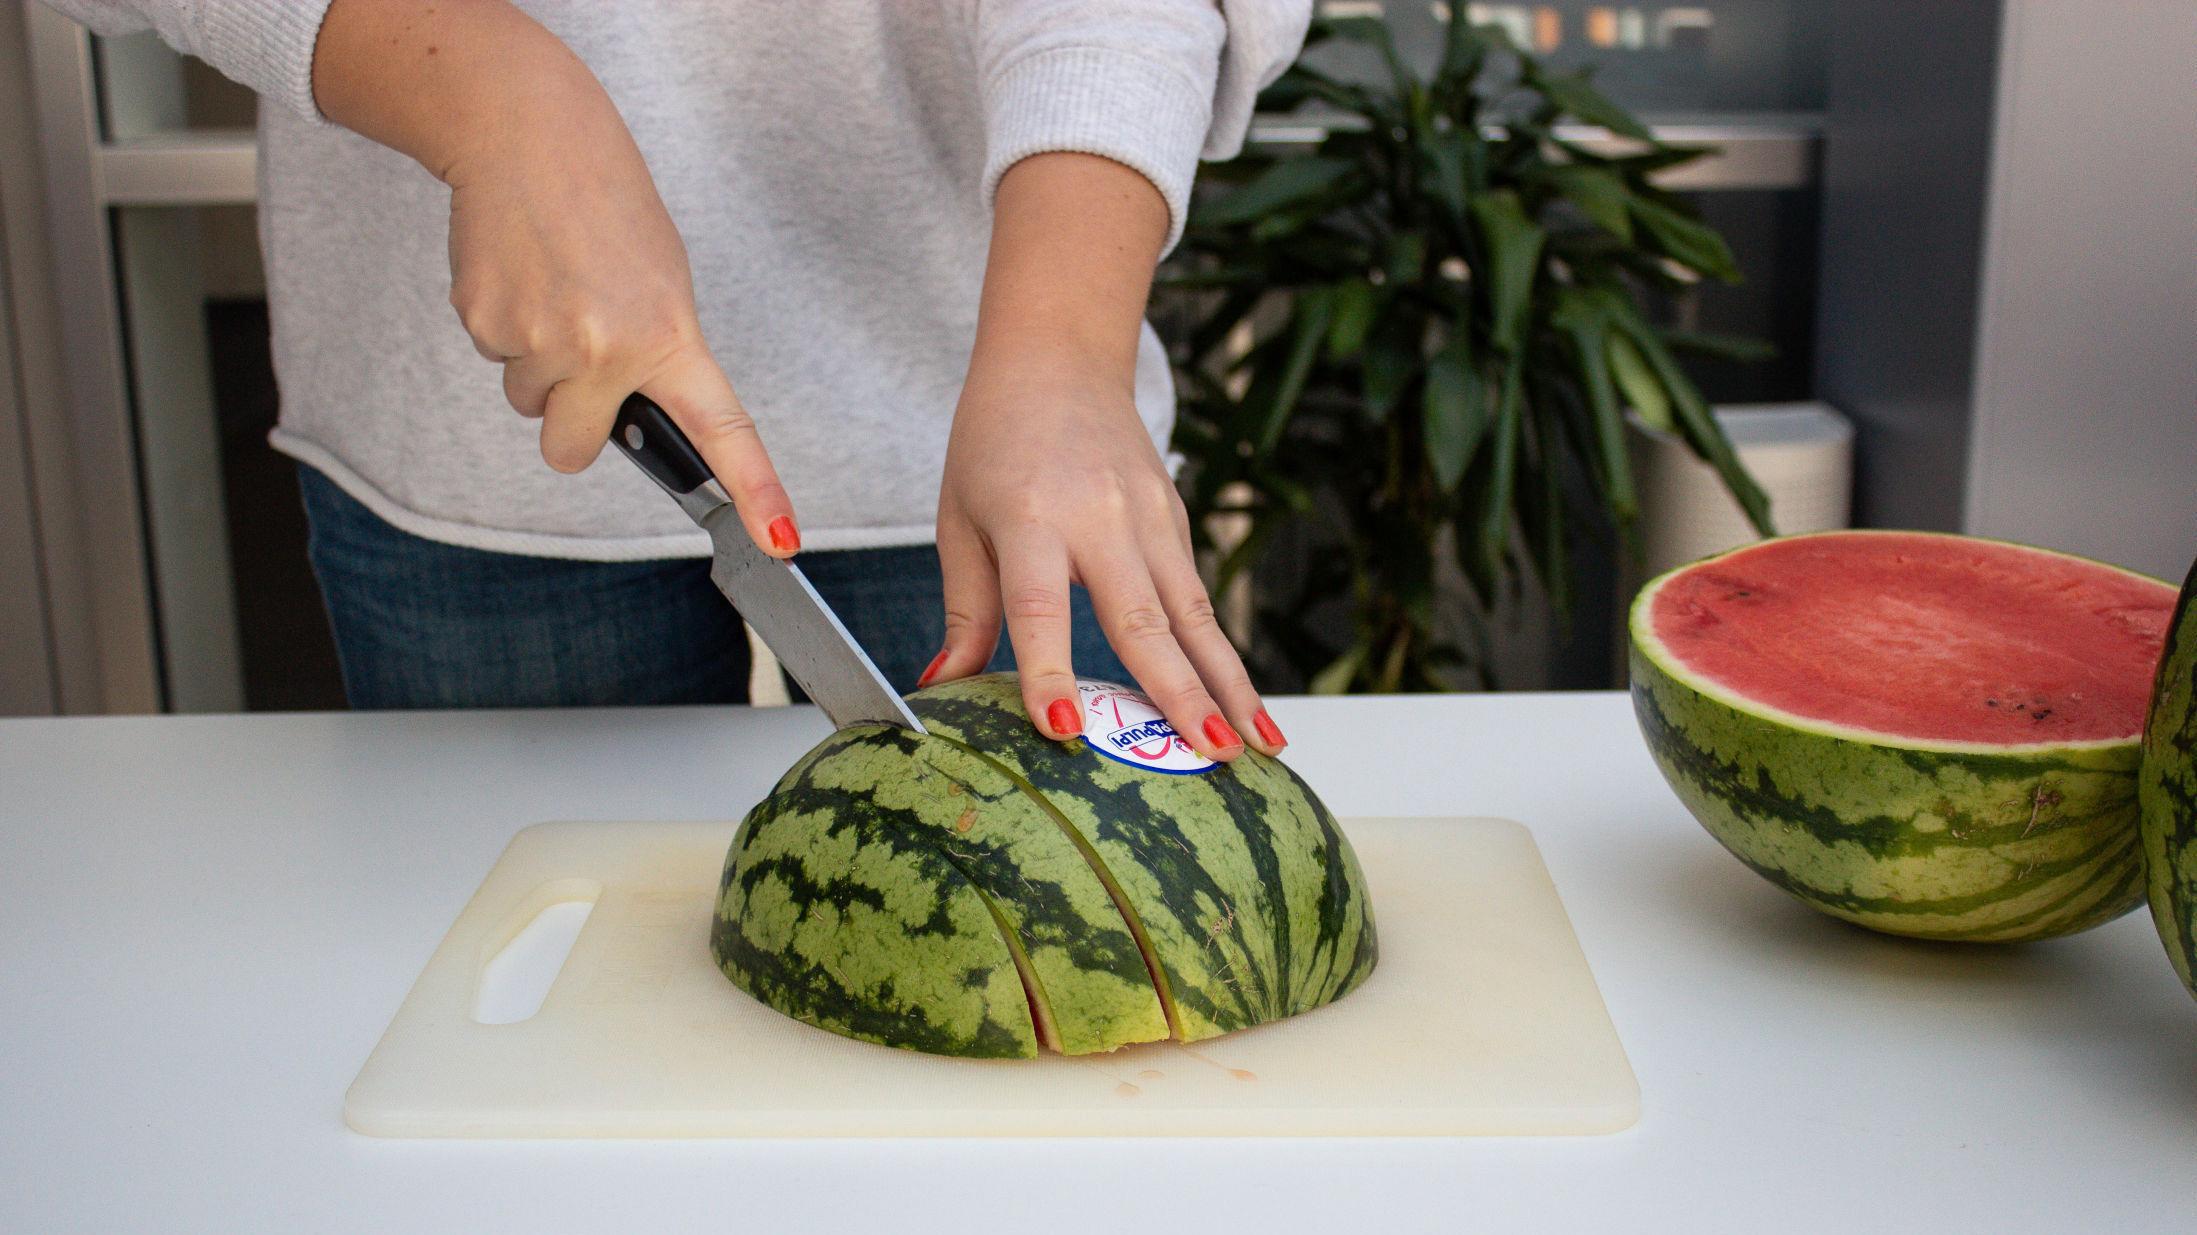 VANNMELON-TRIKS: Den saftige, gode frukten kan gi mye søl og styr, men her er triksene som gjør melonen enklere å håndtere! Foto: Godt